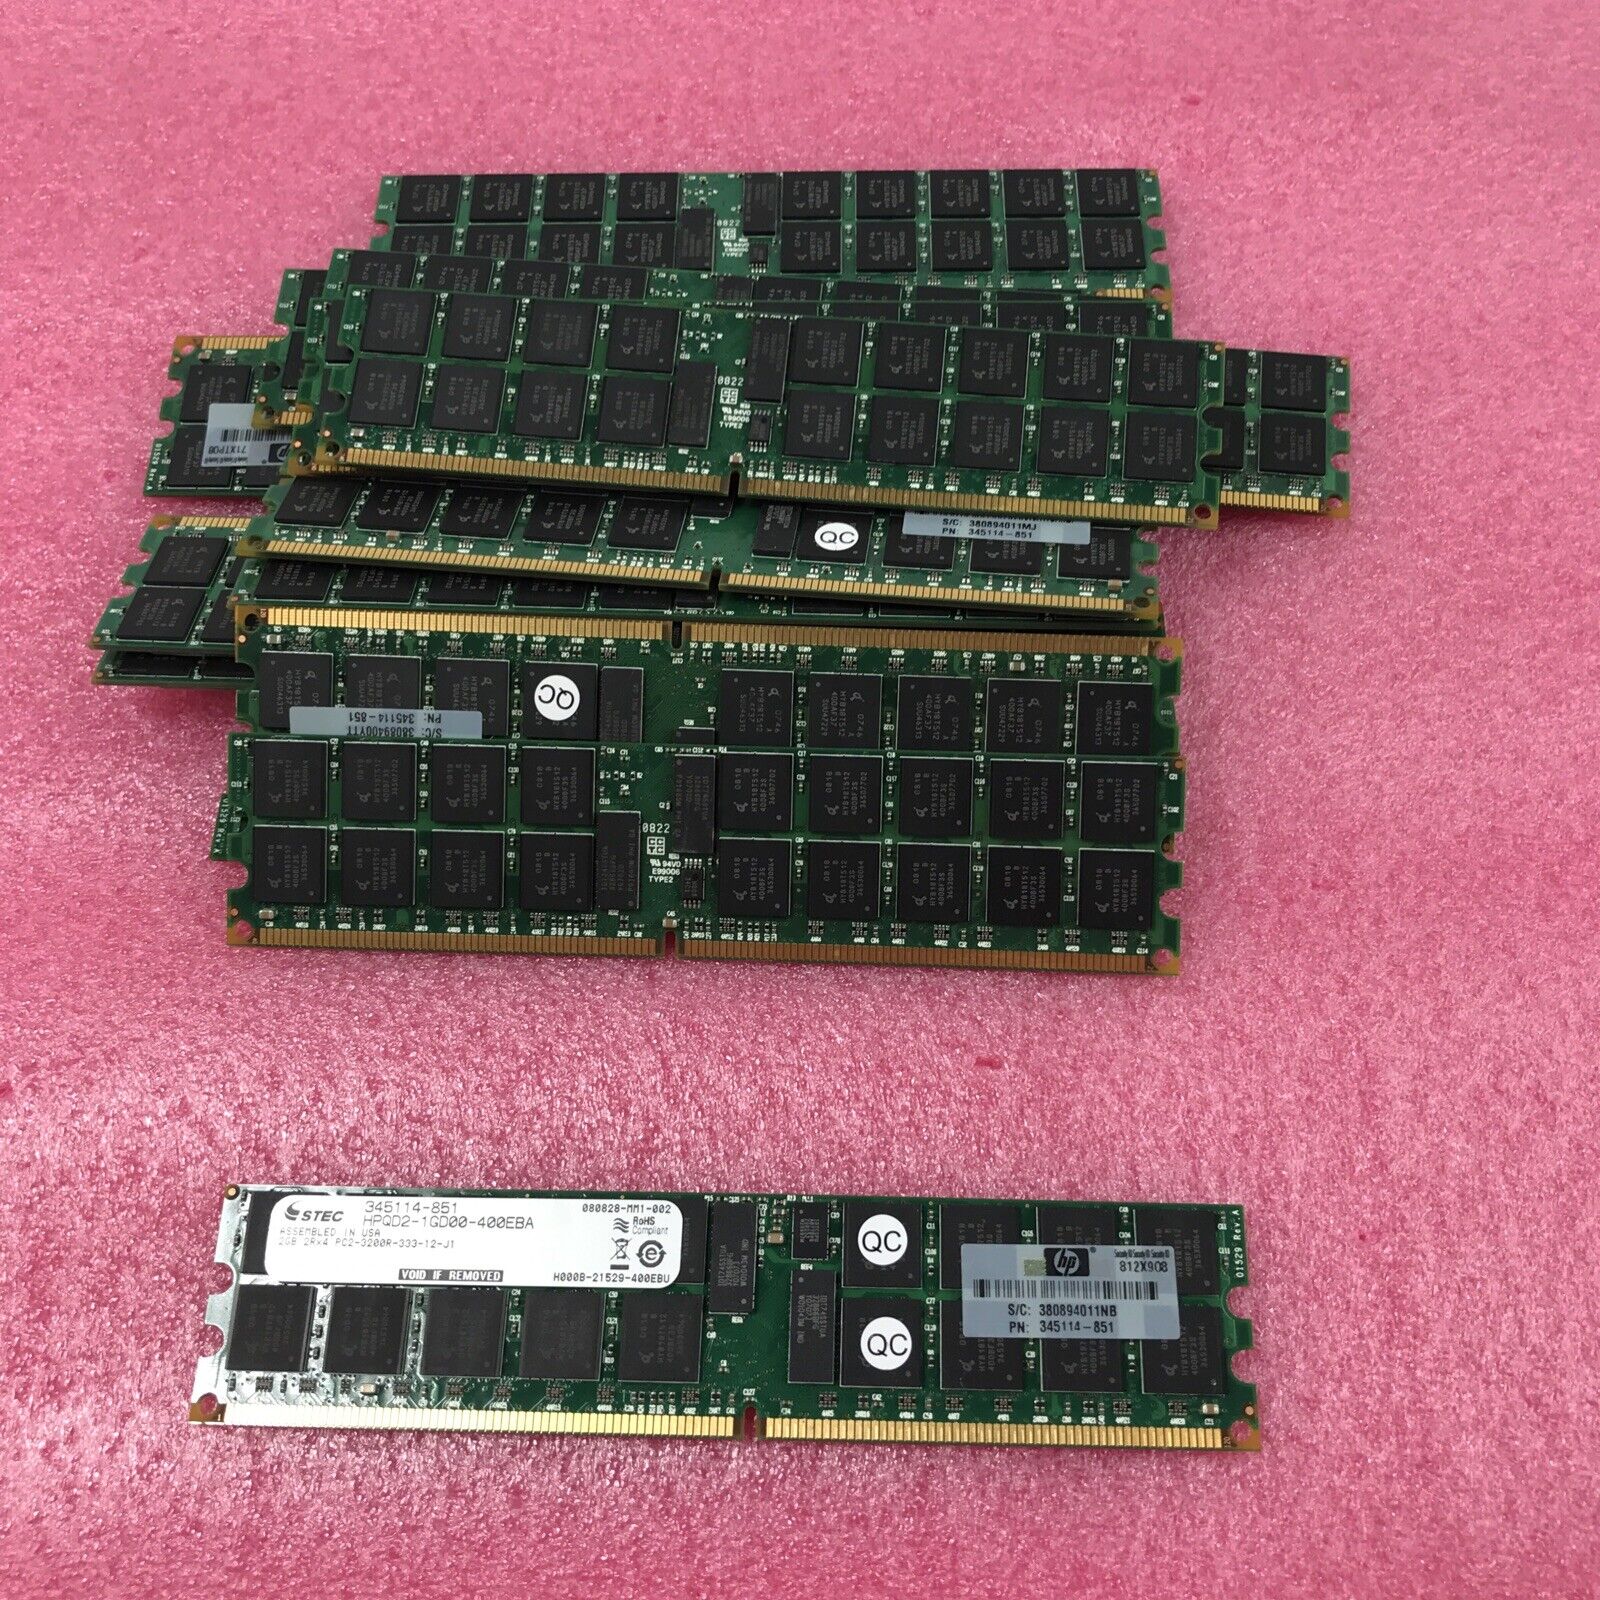 (Lot of 16) Stec 2GB Ram 345114-851 2Rx4 PC2